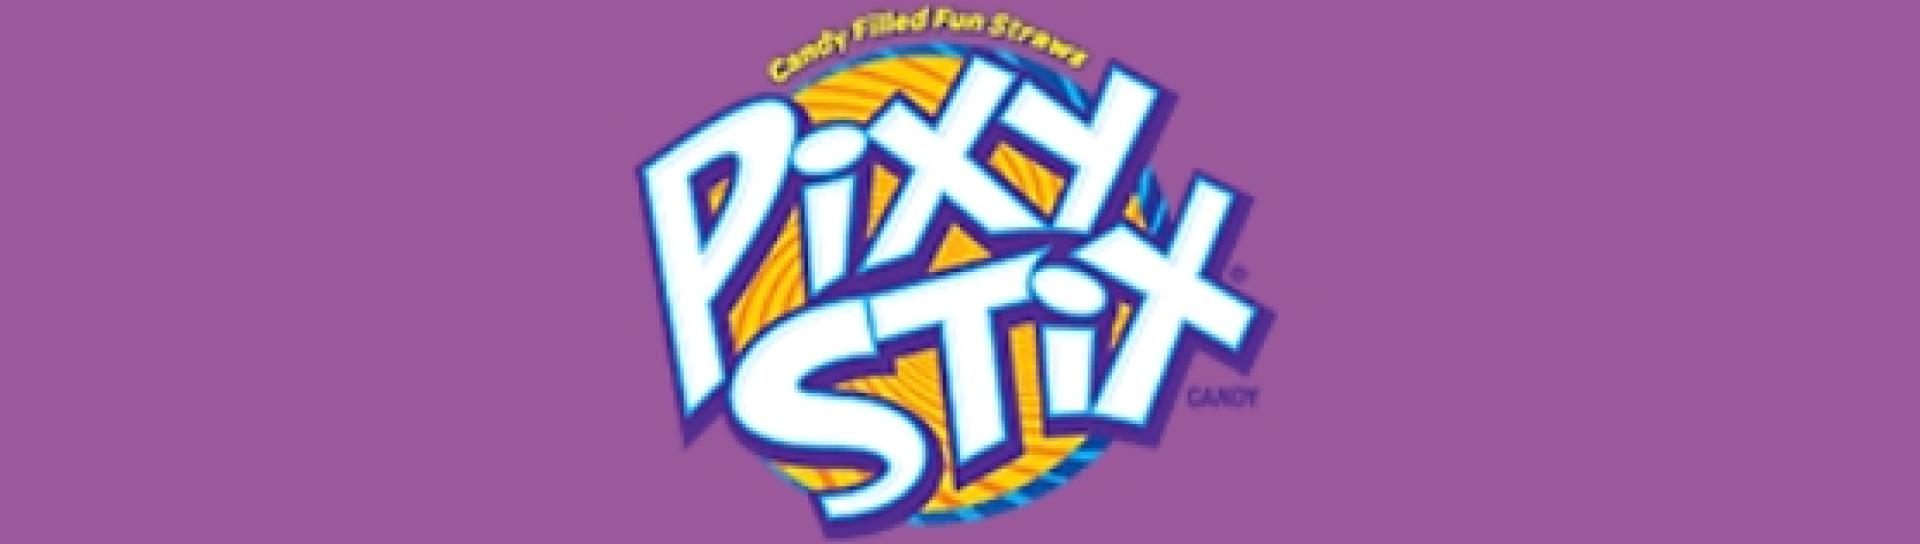 Pixy Stix